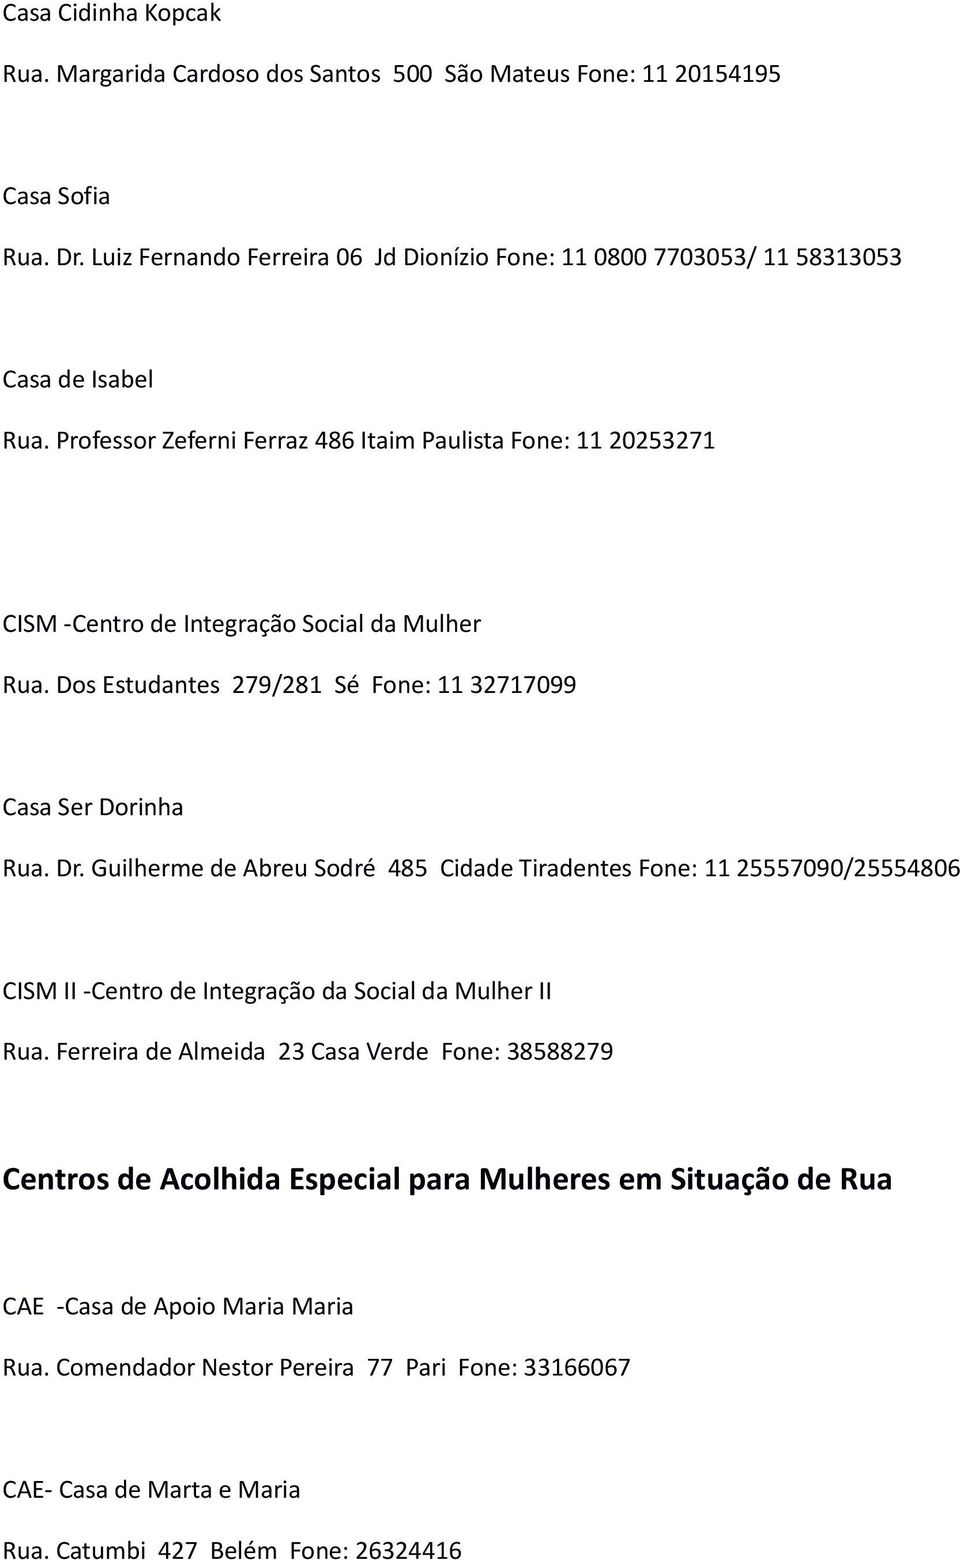 Professor Zeferni Ferraz 486 Itaim Paulista Fone: 11 20253271 CISM -Centro de Integração Social da Mulher Rua. Dos Estudantes 279/281 Sé Fone: 11 32717099 Casa Ser Dorinha Rua. Dr.